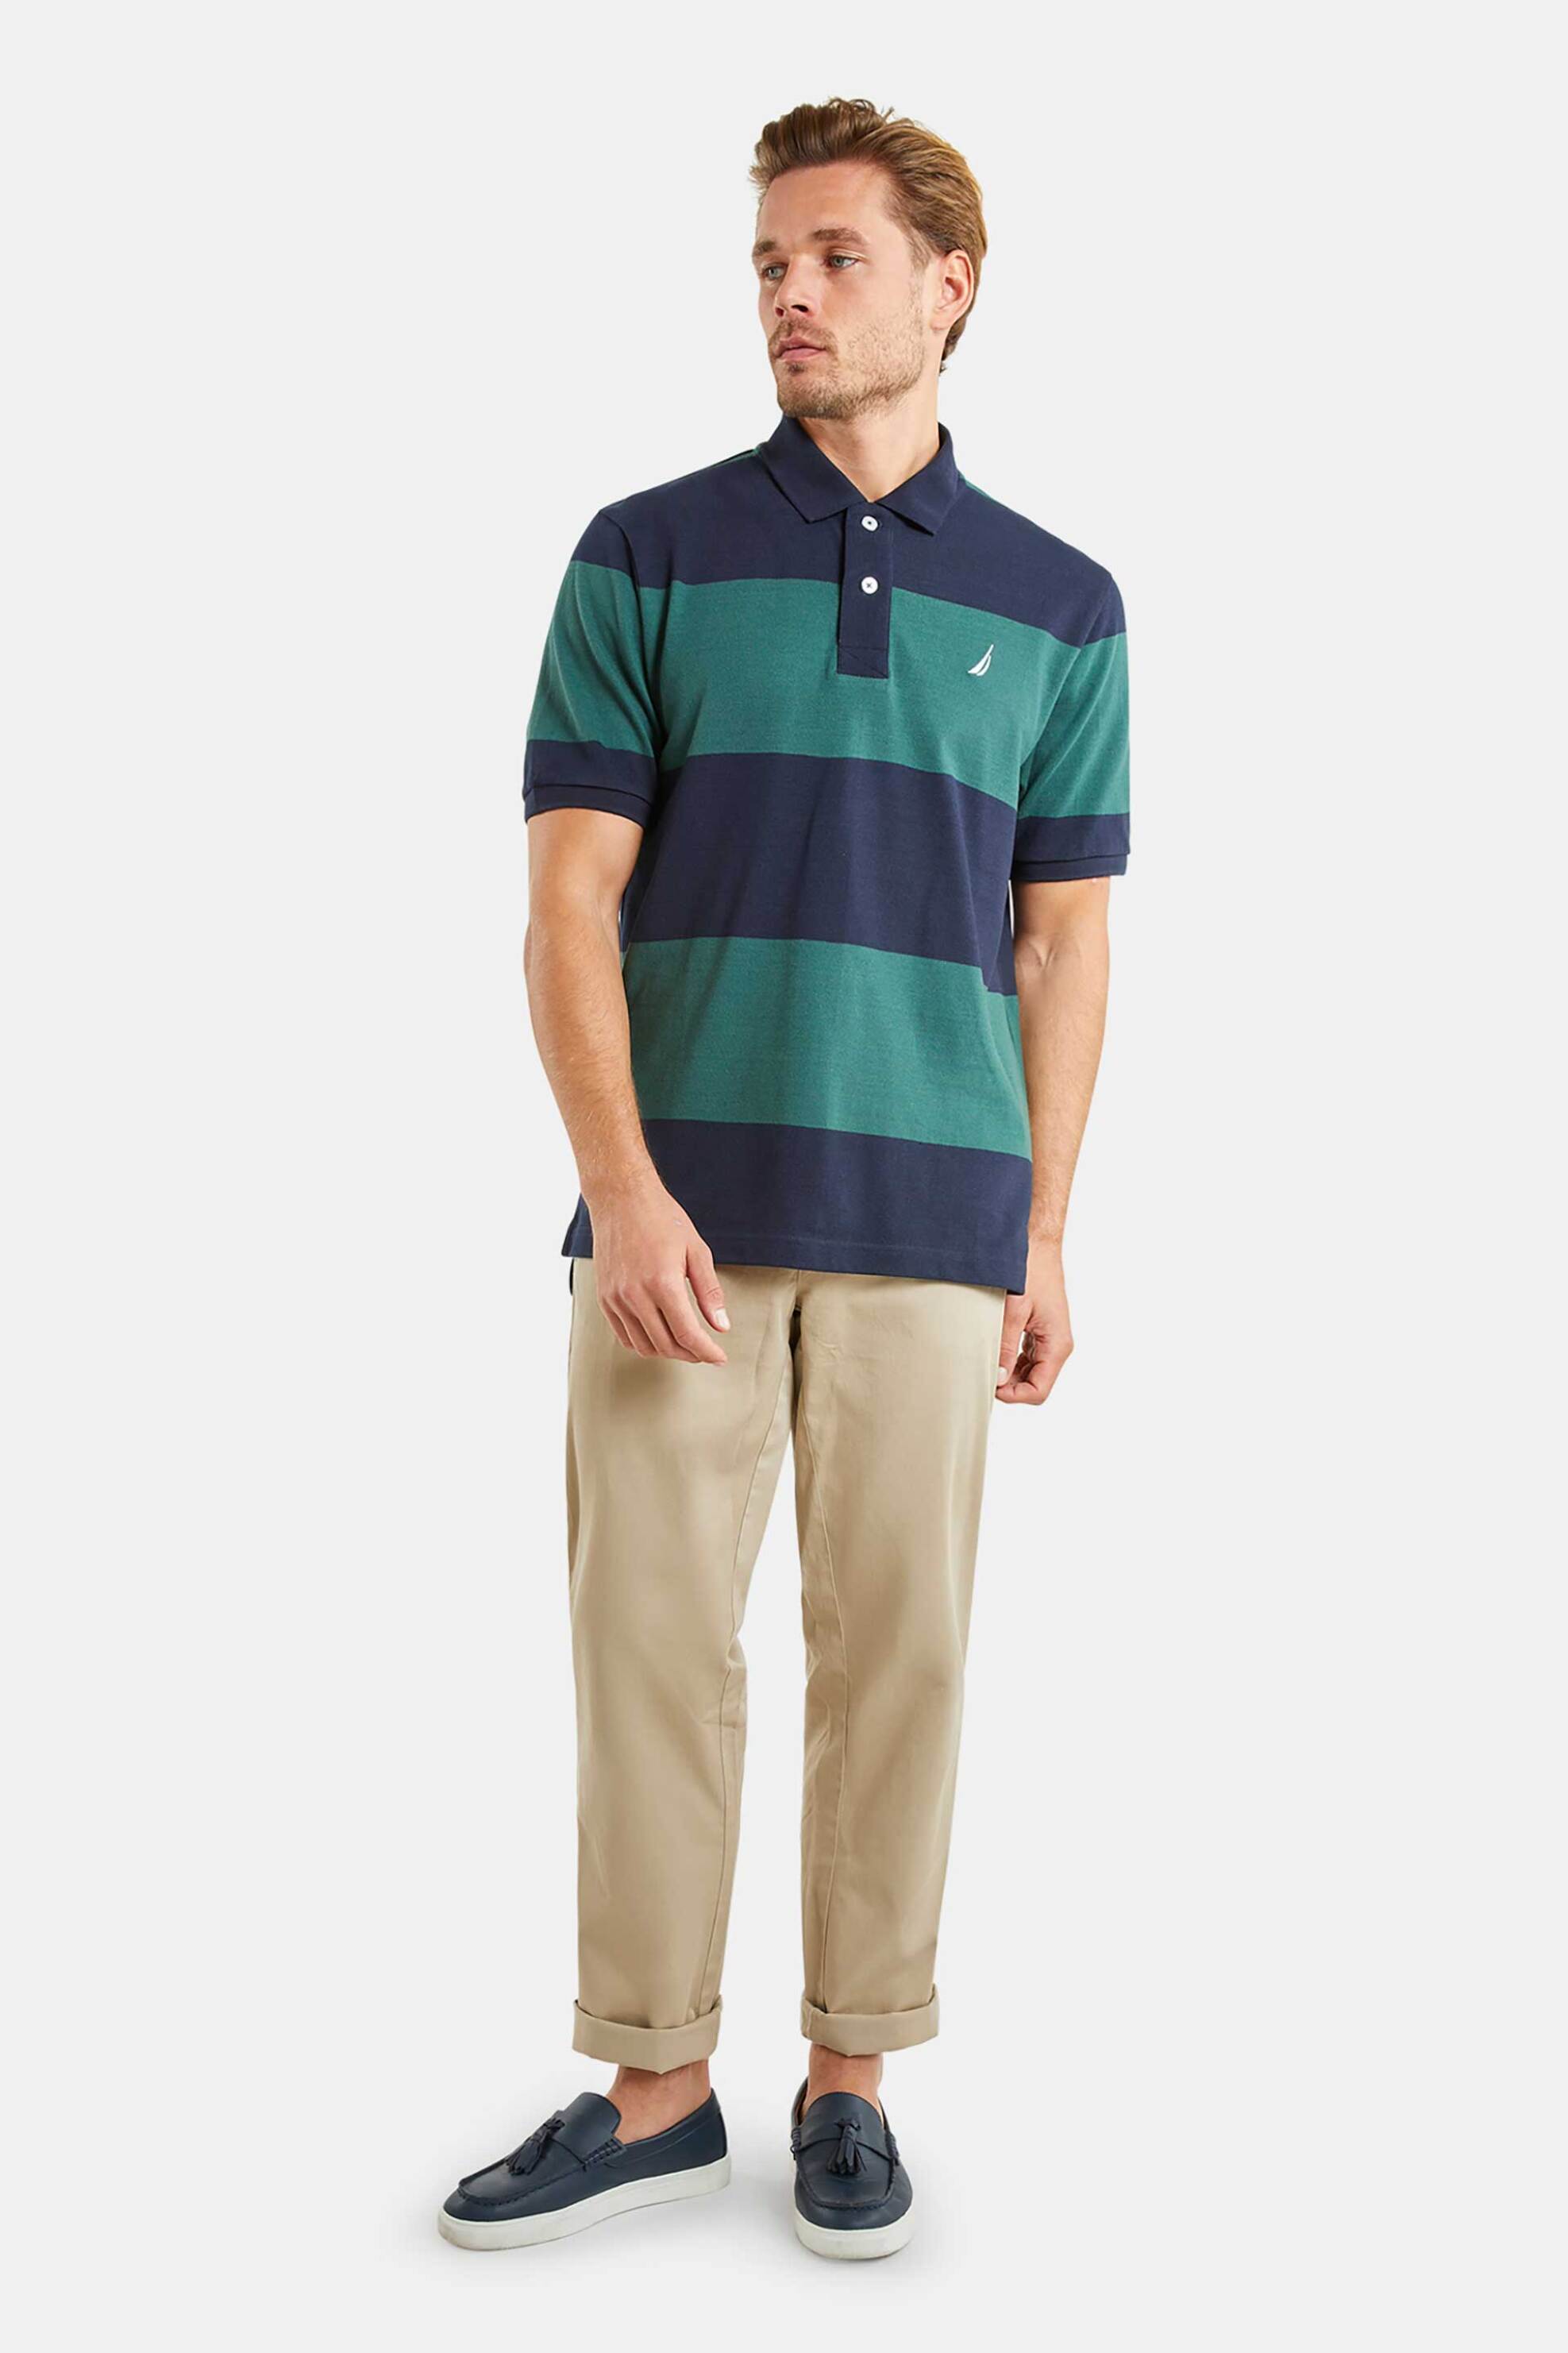 Ανδρική Μόδα > Ανδρικά Ρούχα > Ανδρικές Μπλούζες > Ανδρικές Μπλούζες Πολο Nautica ανδρική πόλο μπλούζα με logo patch και ρίγες - N1M01720 Πράσινο Σκούρο